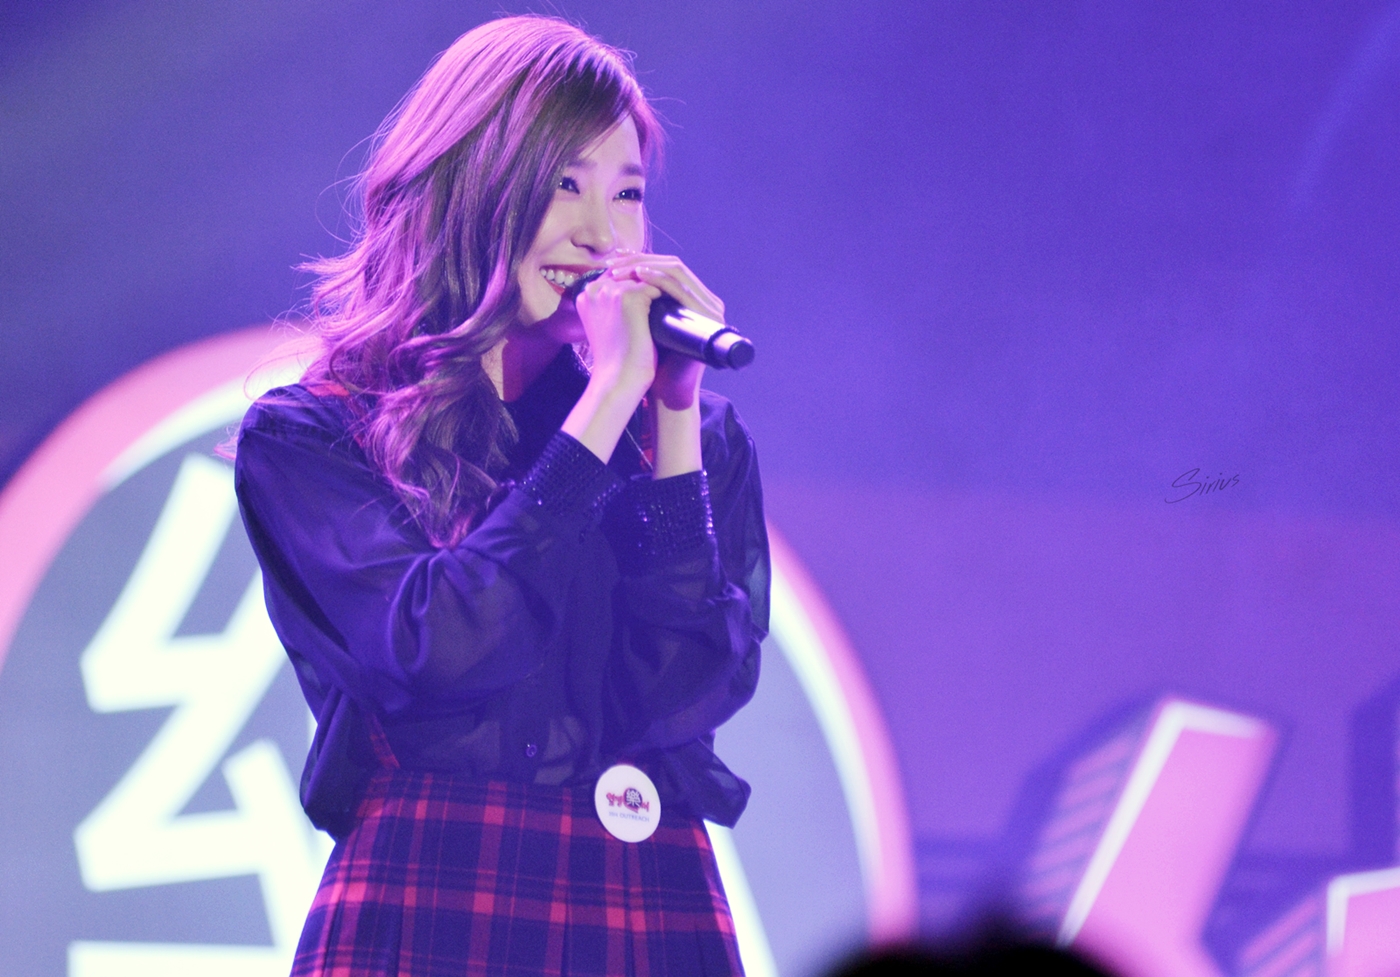 [PIC][11-11-2014]TaeTiSeo biểu diễn tại "Passion Concert 2014" ở Seoul Jamsil Gymnasium vào tối nay 26378B4E5462400D0A6688